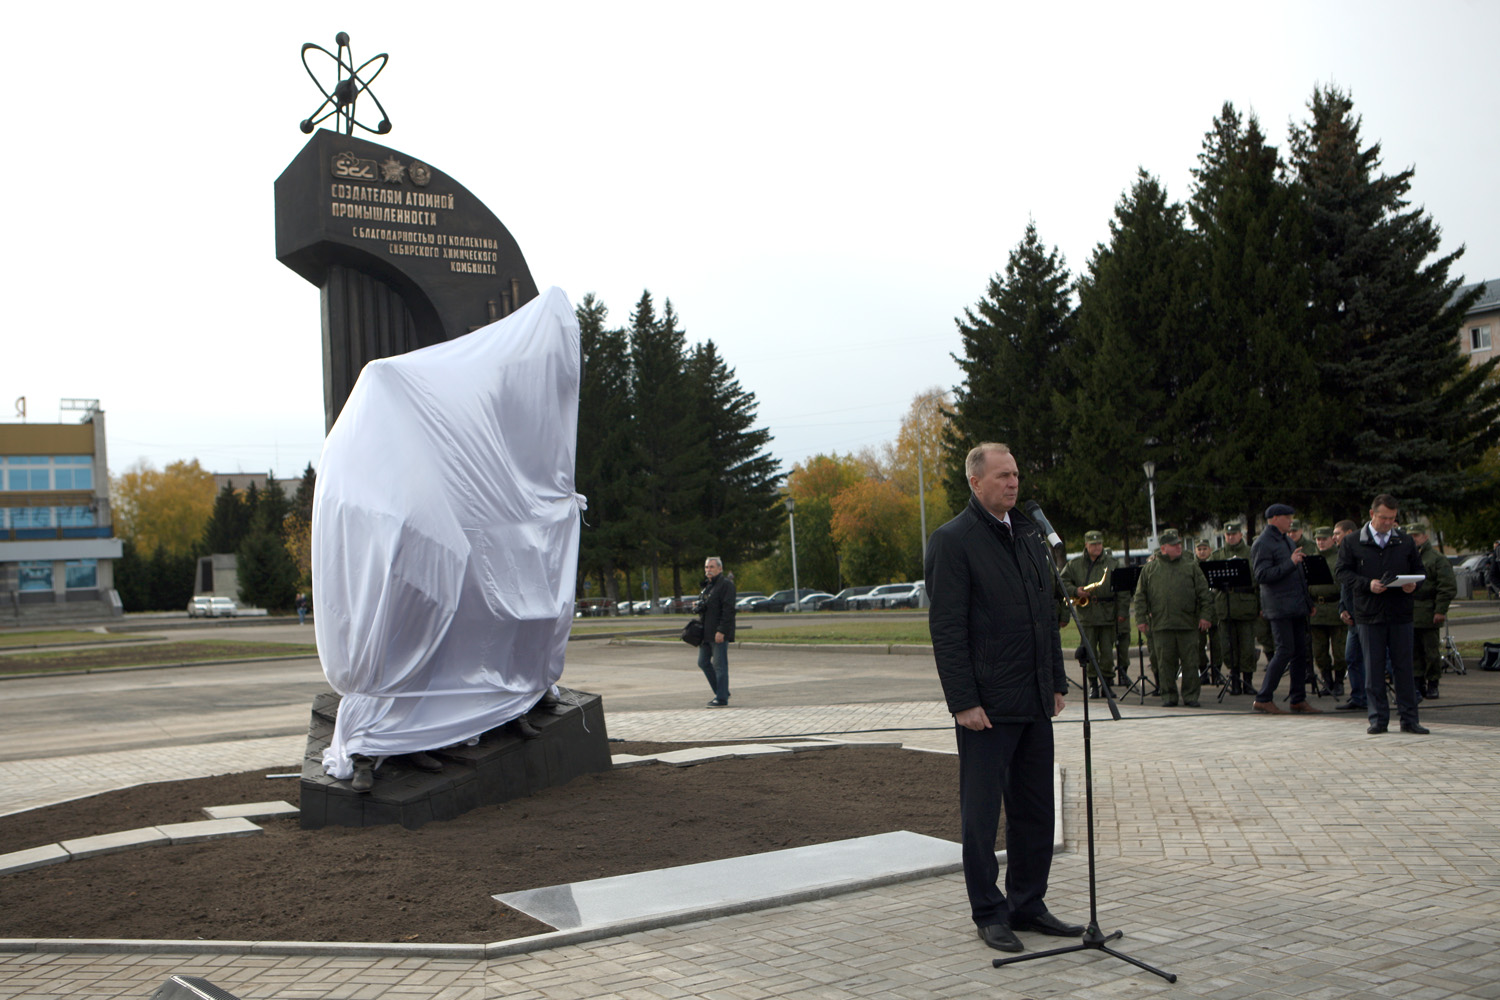 В Северске открыли памятник атомщикам